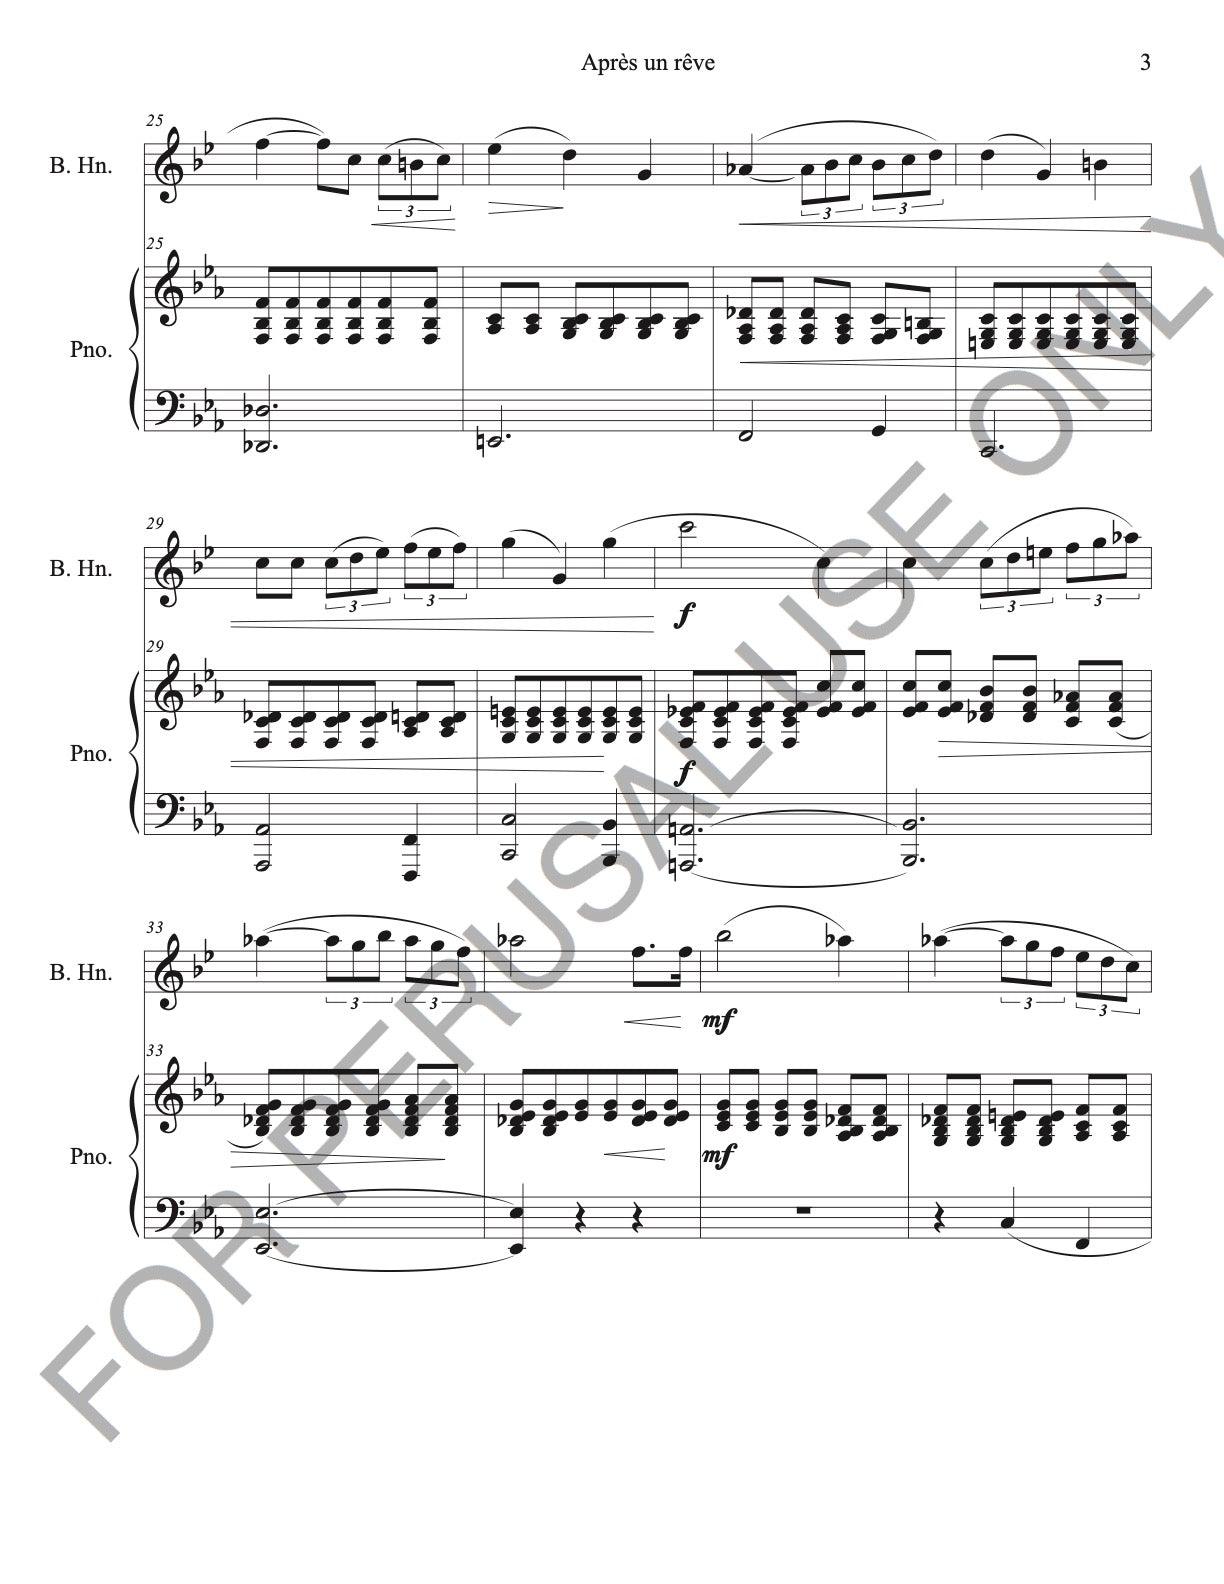 Basset Horn and Piano Sheet Music: Après un rêve by Faure (score+parts+mp3) - ChaipruckMekara